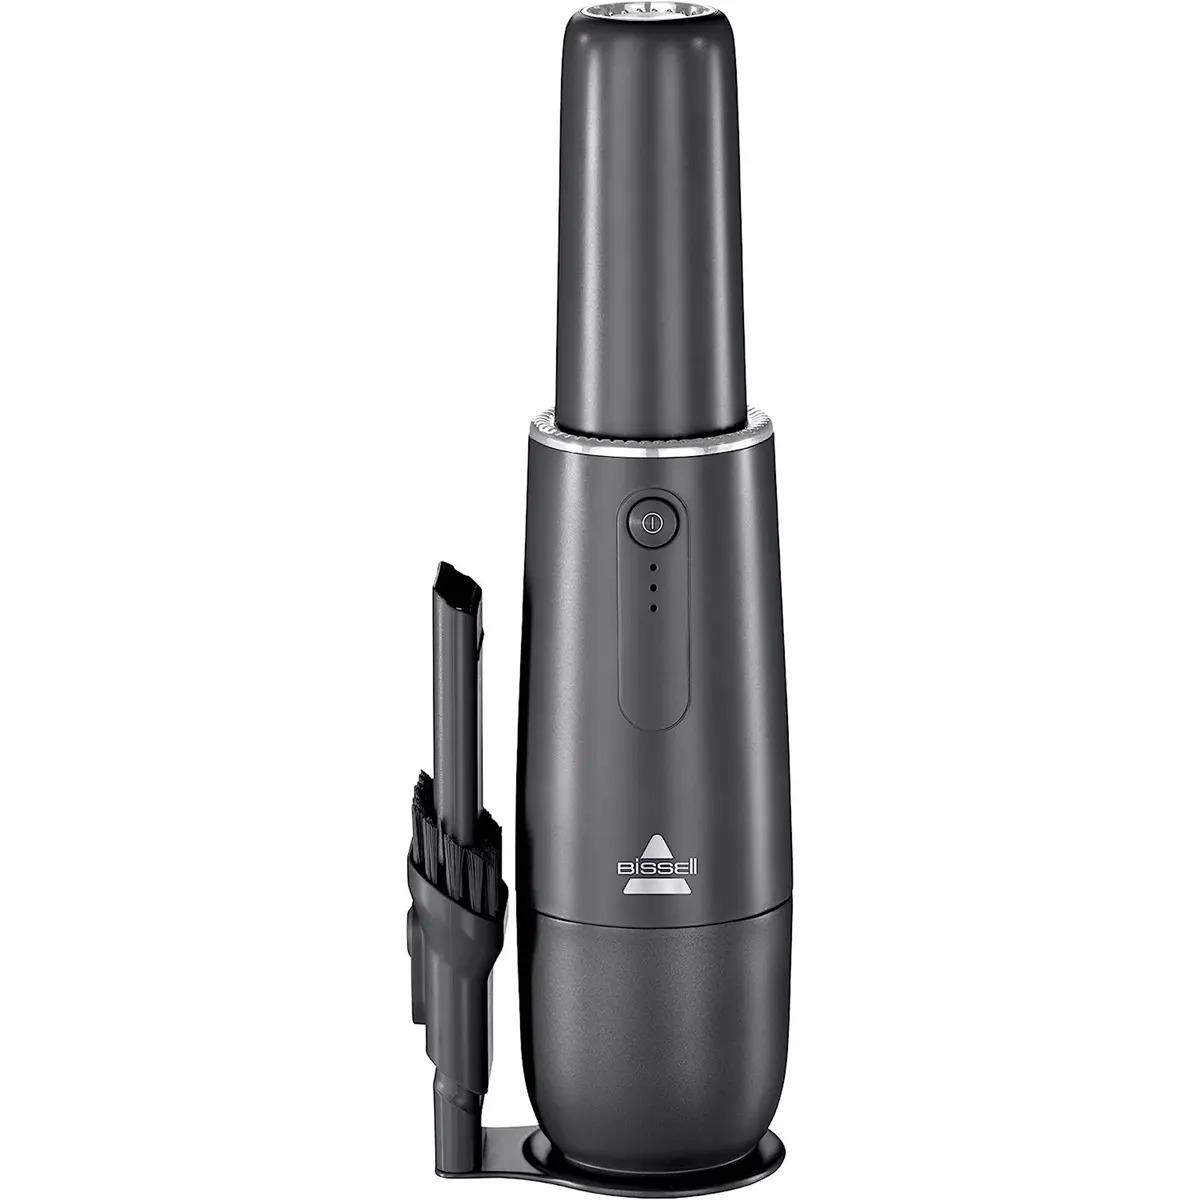 Bissell AeroSlim Lithium-Ion Cordless Handheld Vacuum for $29.99